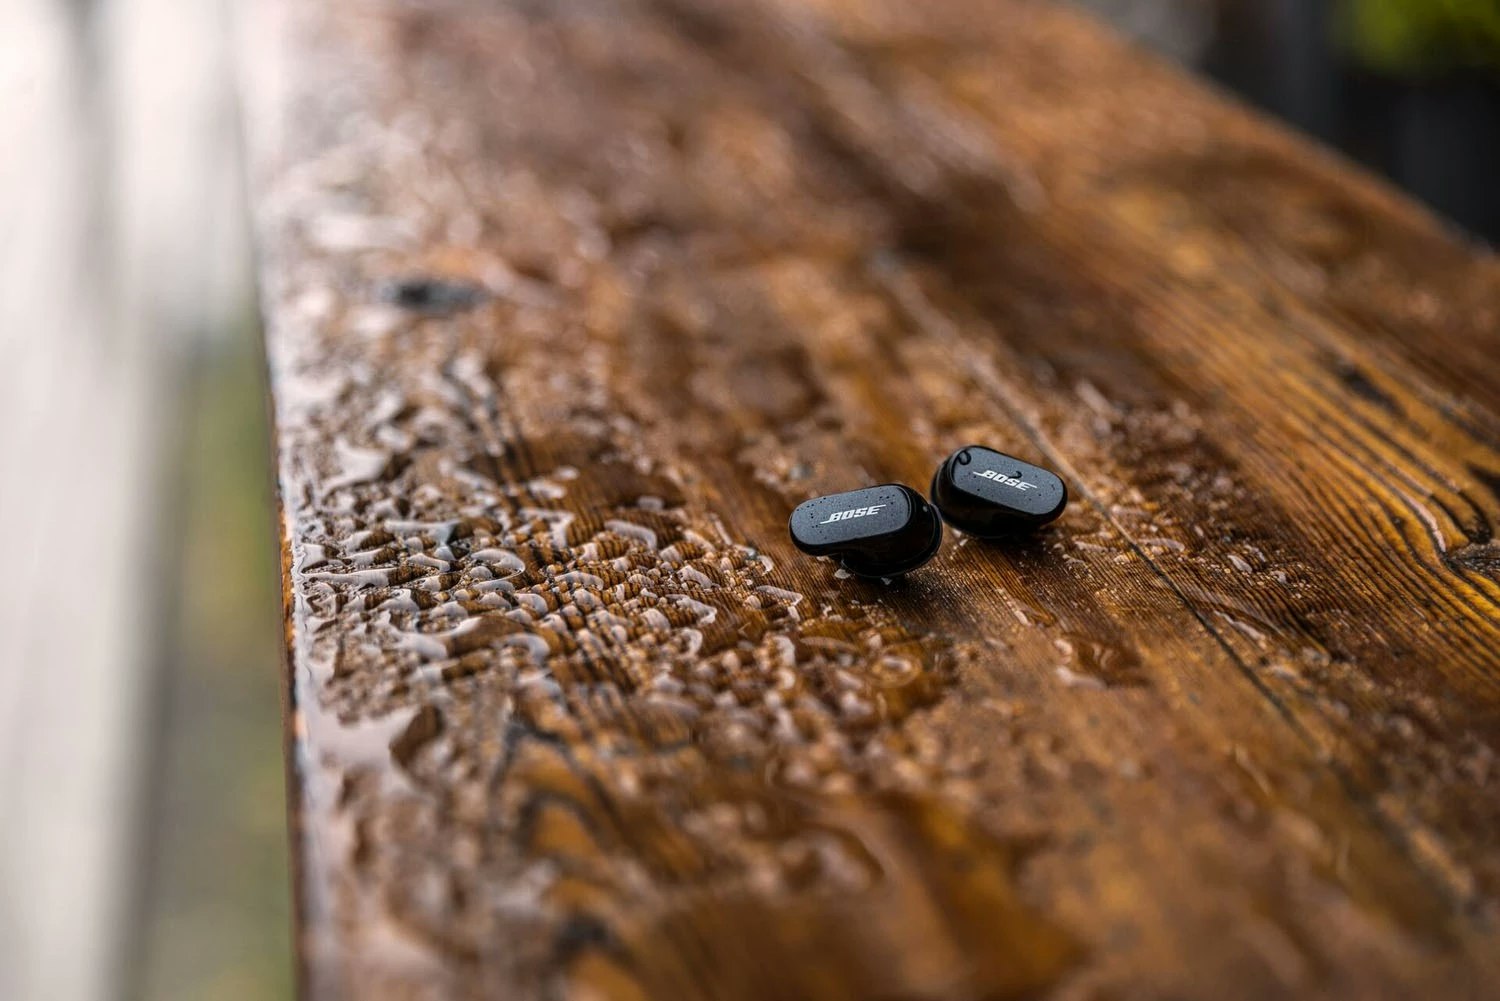 Bose QuietComfort Earbuds II Wireless In-ear svart